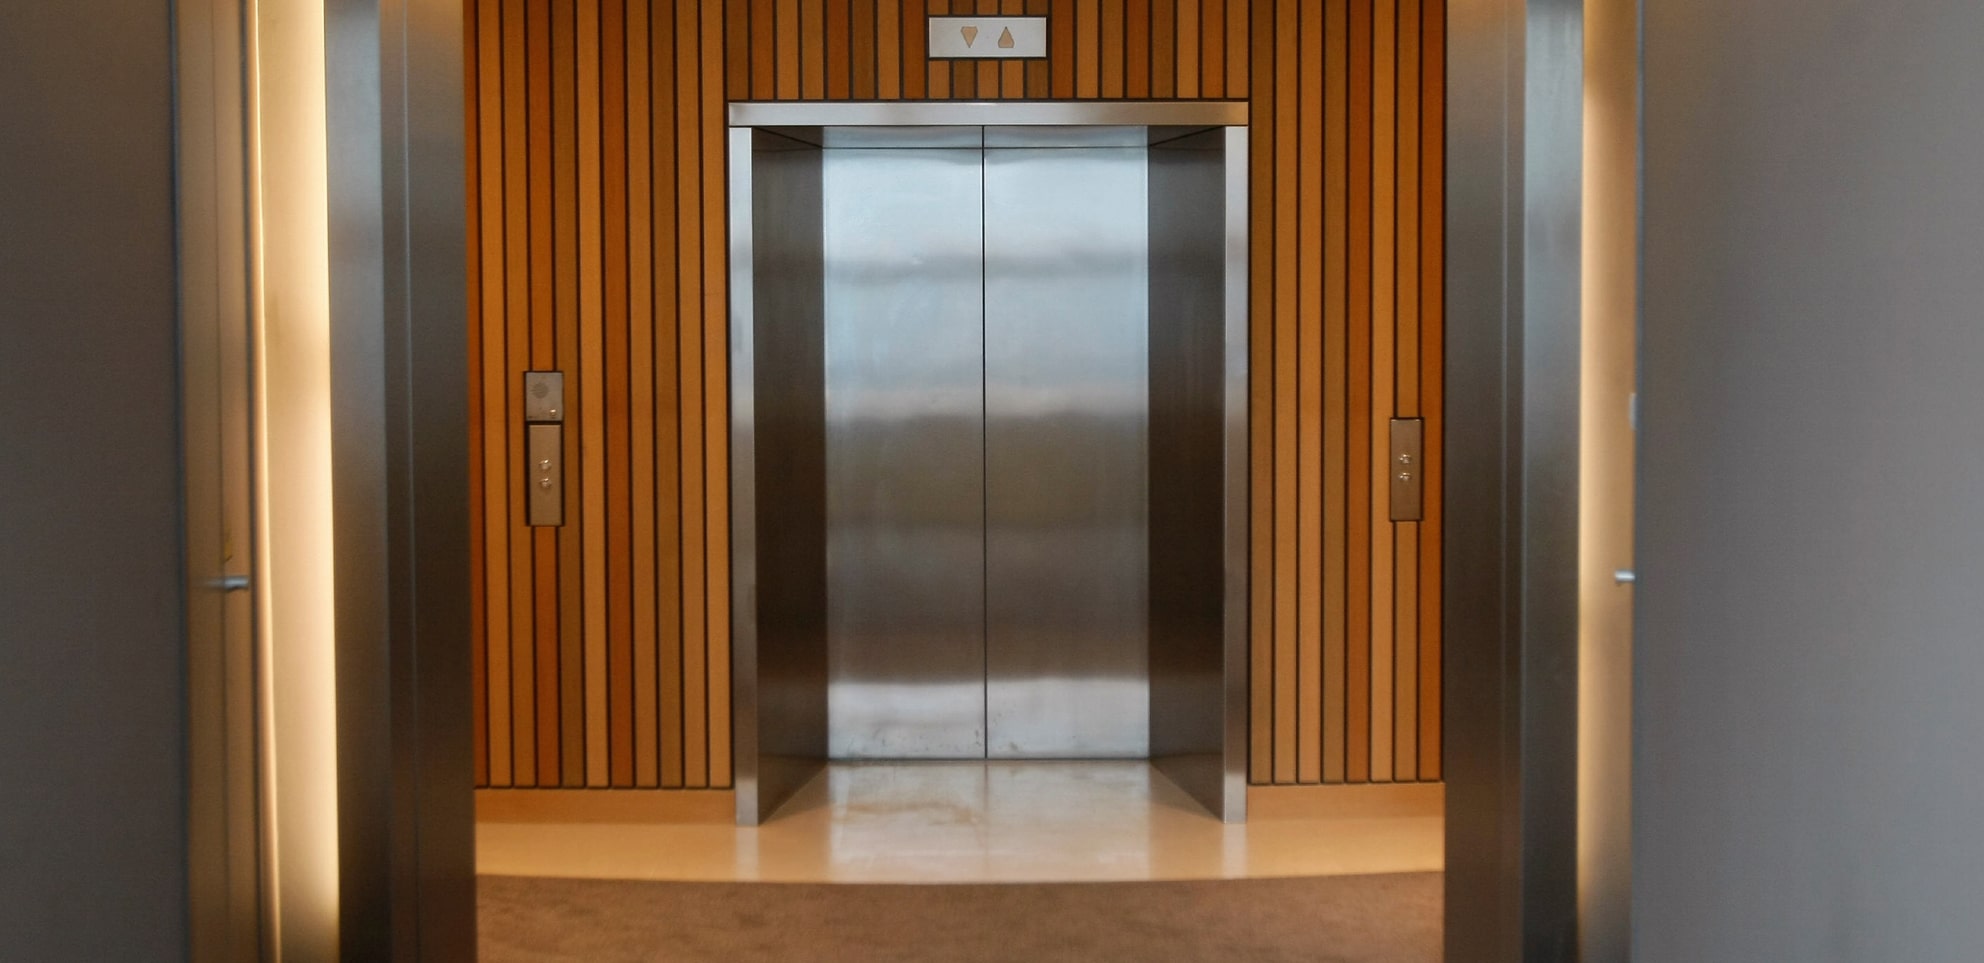 Est –il possible d'utiliser l'ascenseur Chabbatique pendant chabbat ? Halakha Yomit